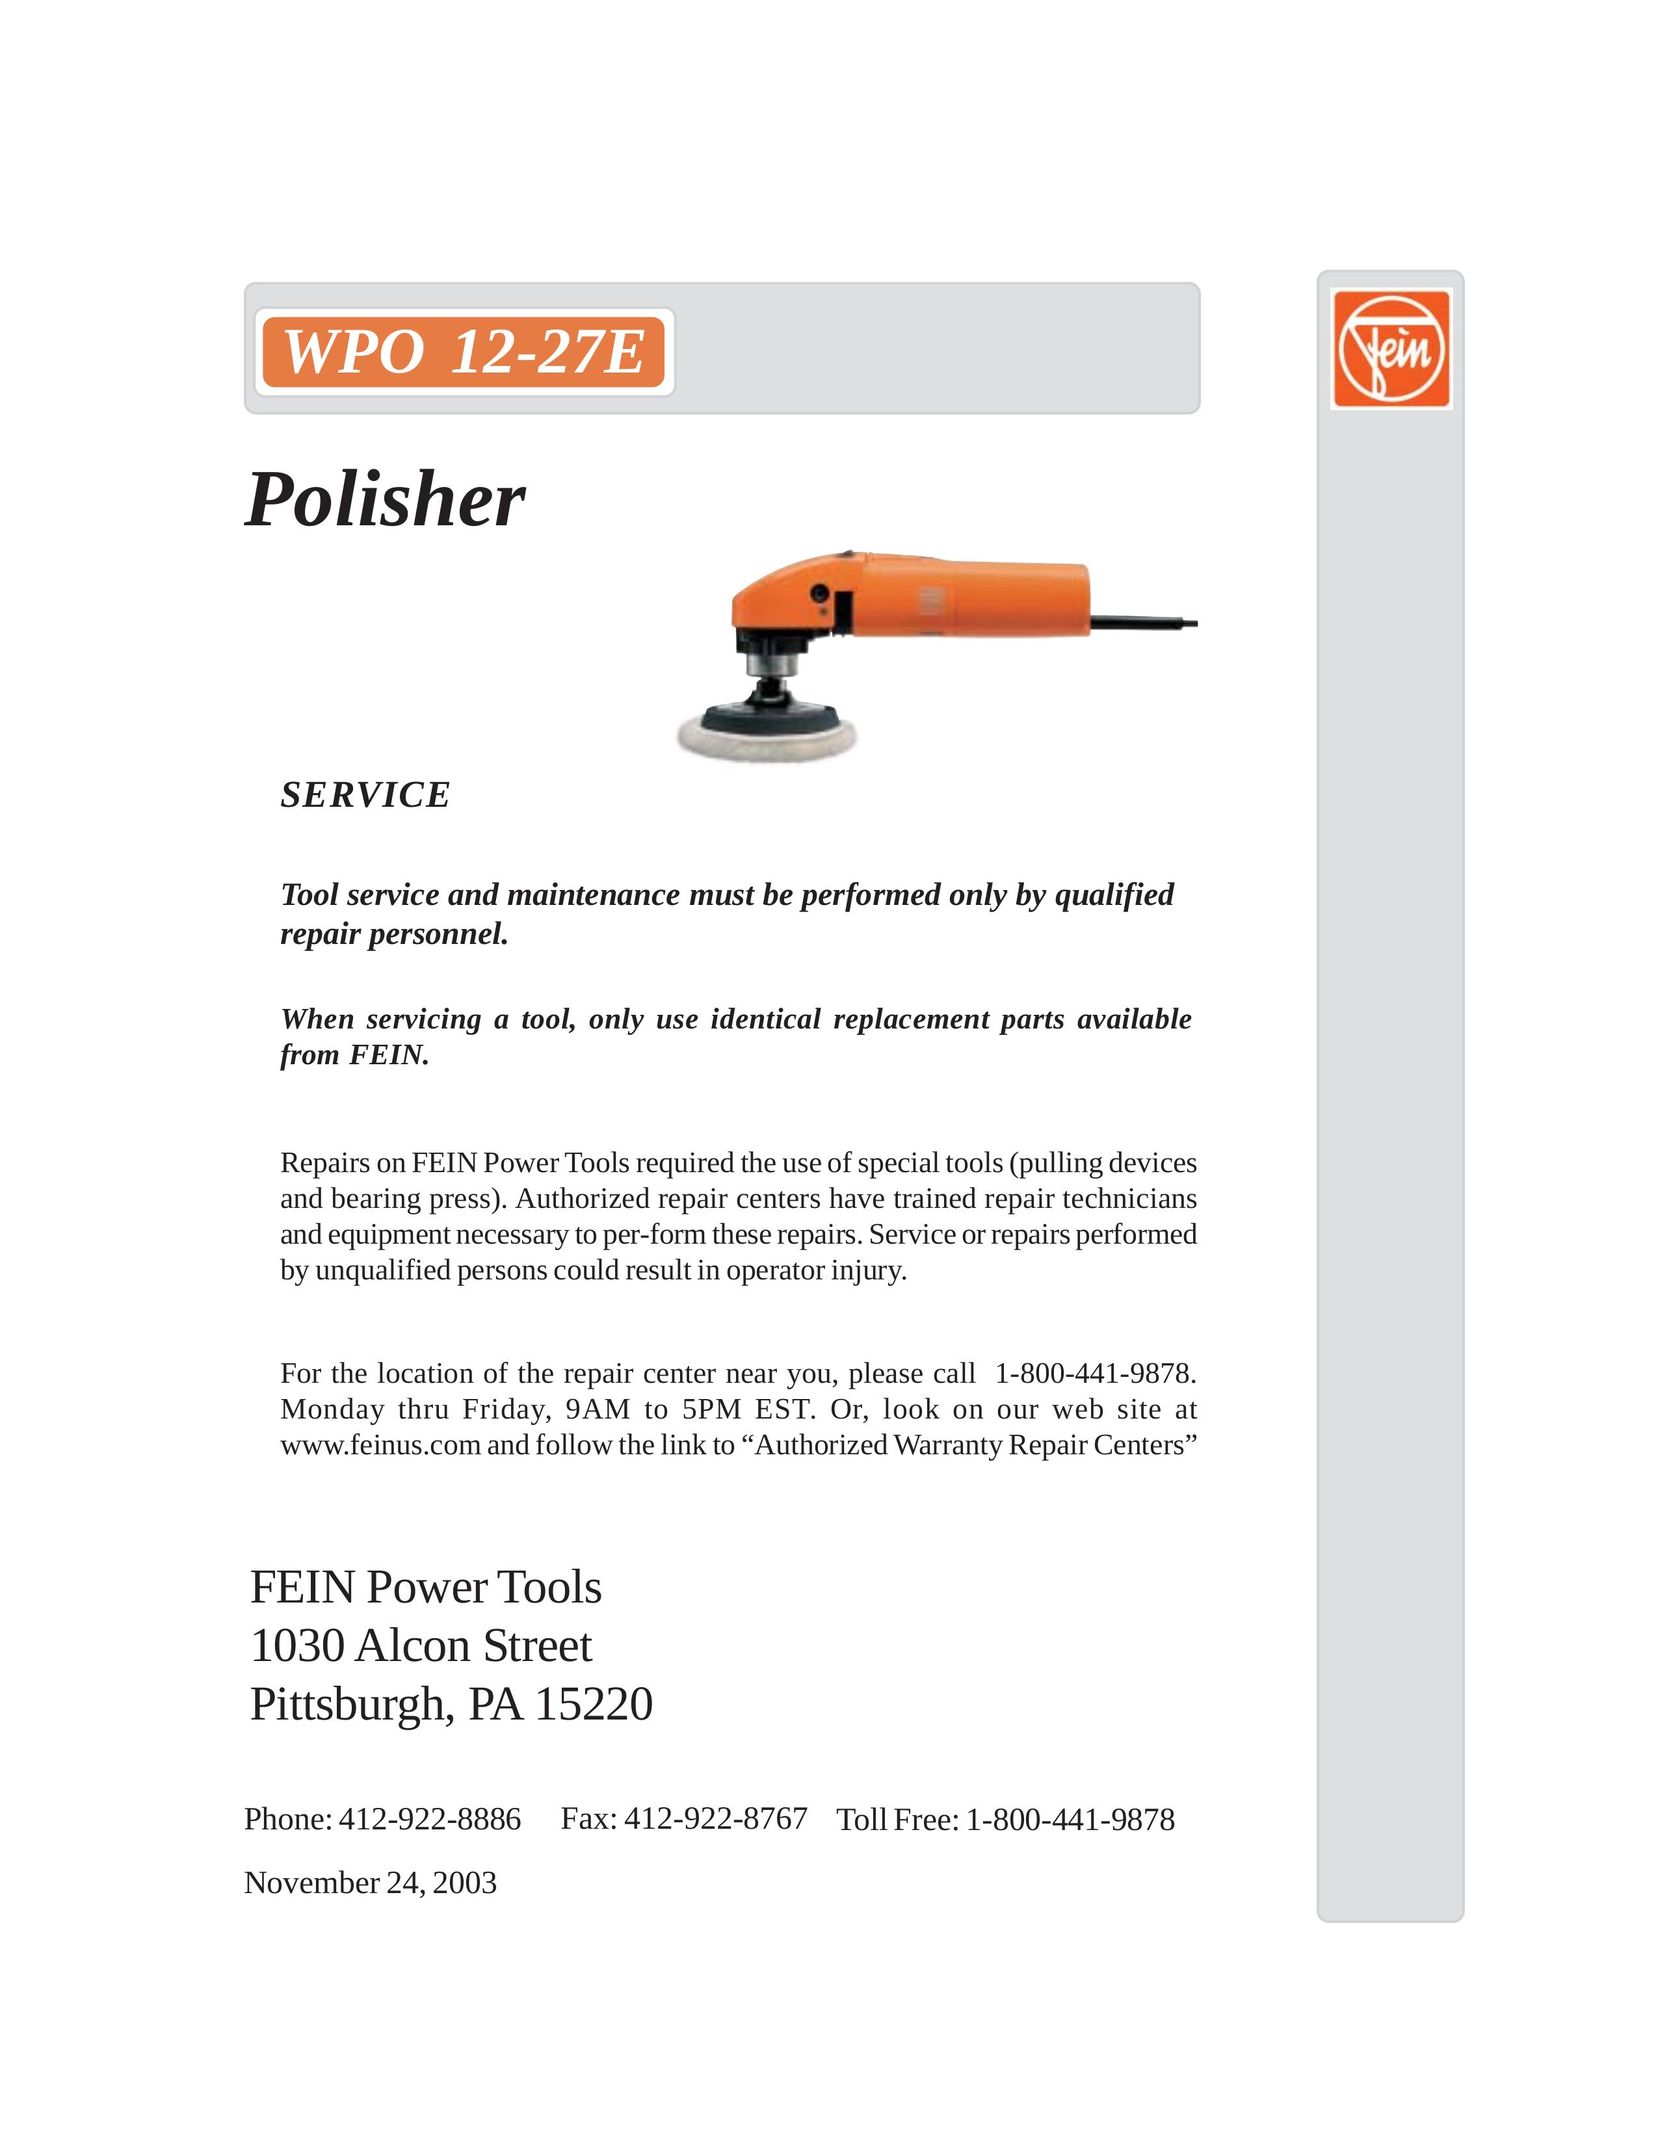 FEIN Power Tools WPO 12-27E Sander User Manual